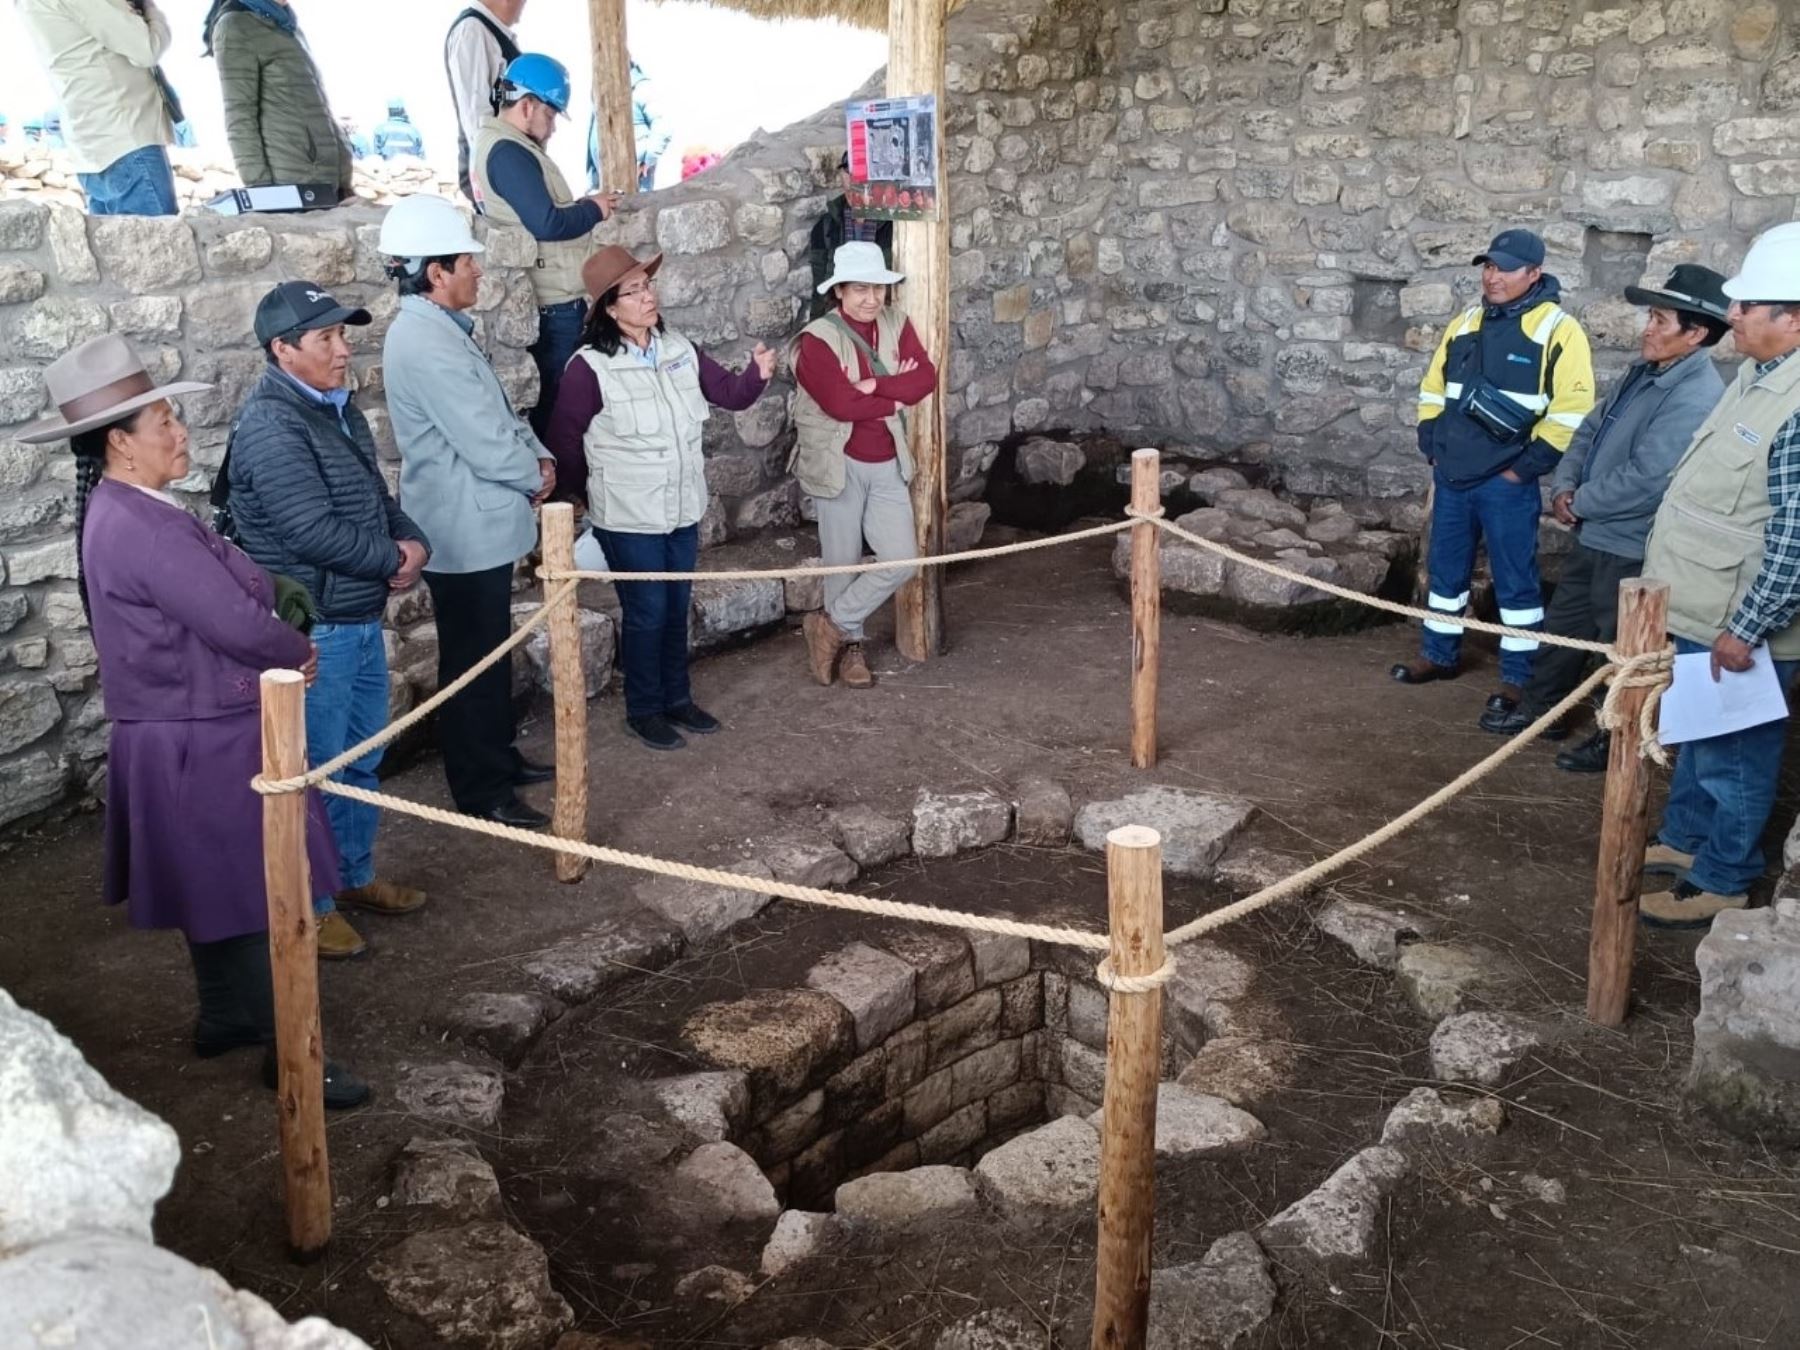 Un importante hallazgo arqueológico se anunció en Cusco. Se descubrieron vestigios de origen inca y preínca en el parque arqueológico K